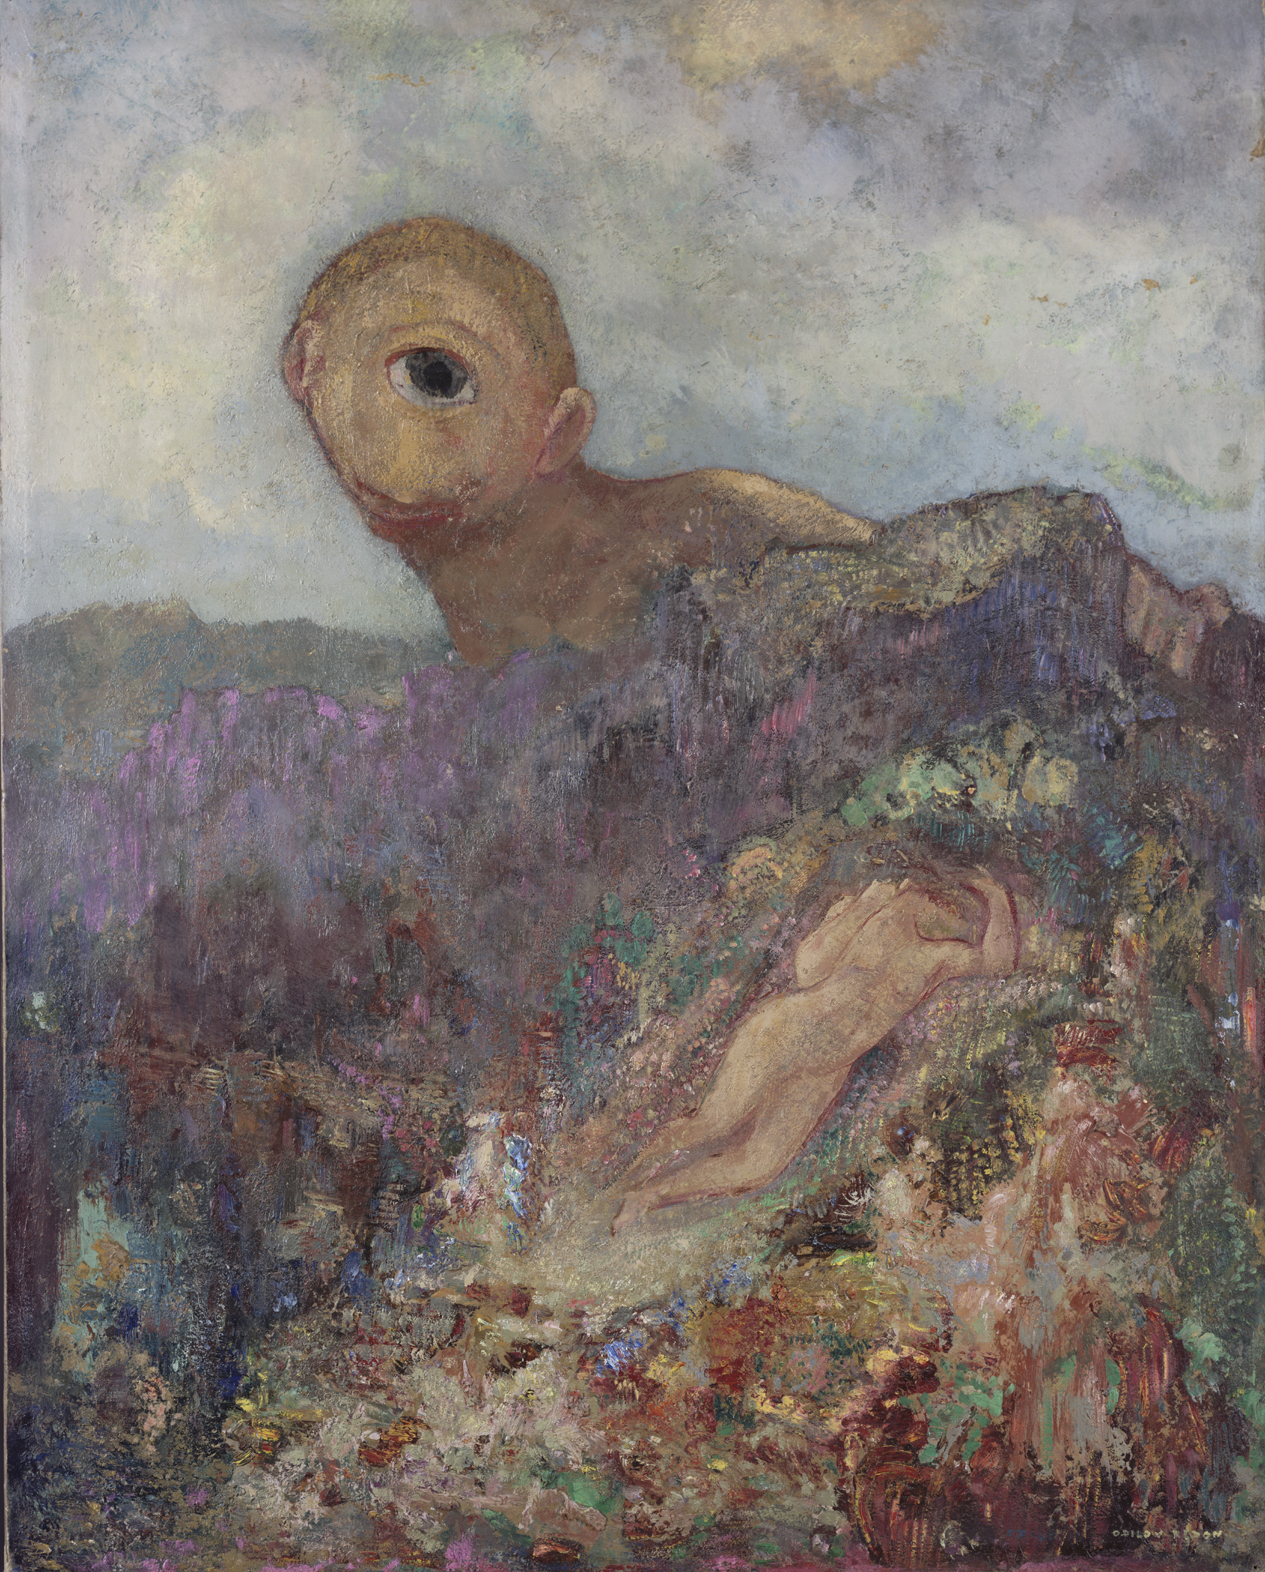 キュクロープス by Odilon Redon - 1914年頃 